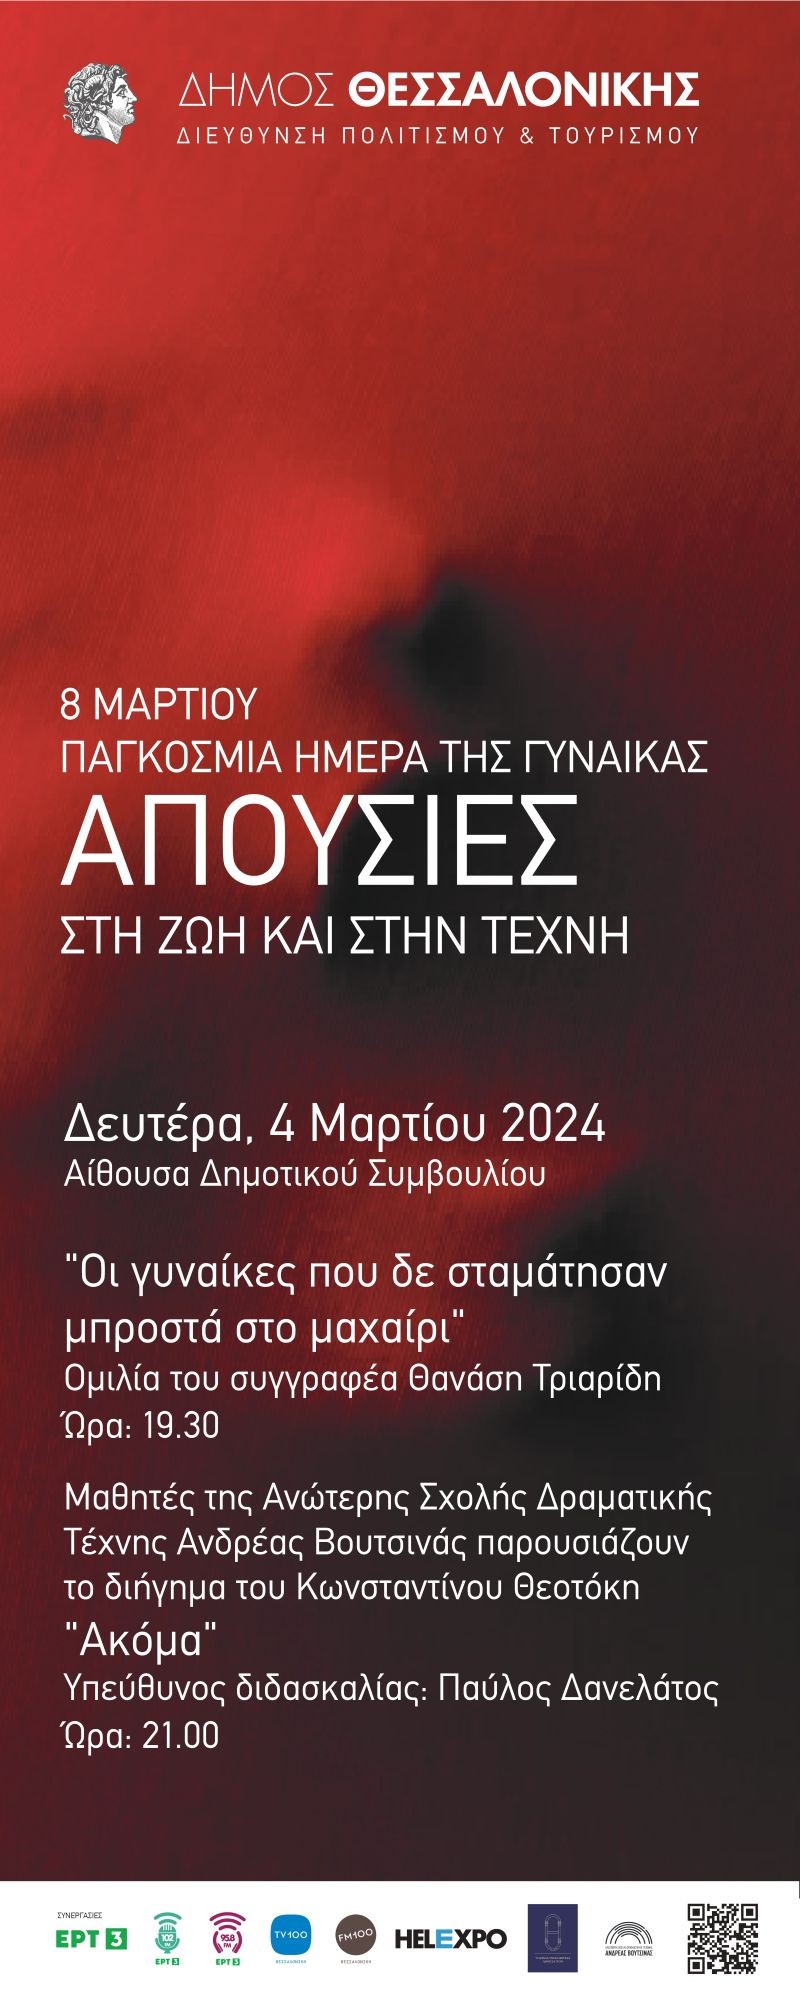 apousies-ekdiloseis-dimou-thessalonikis-pagkosmia-imera-gynaikas-2024-2.jpg